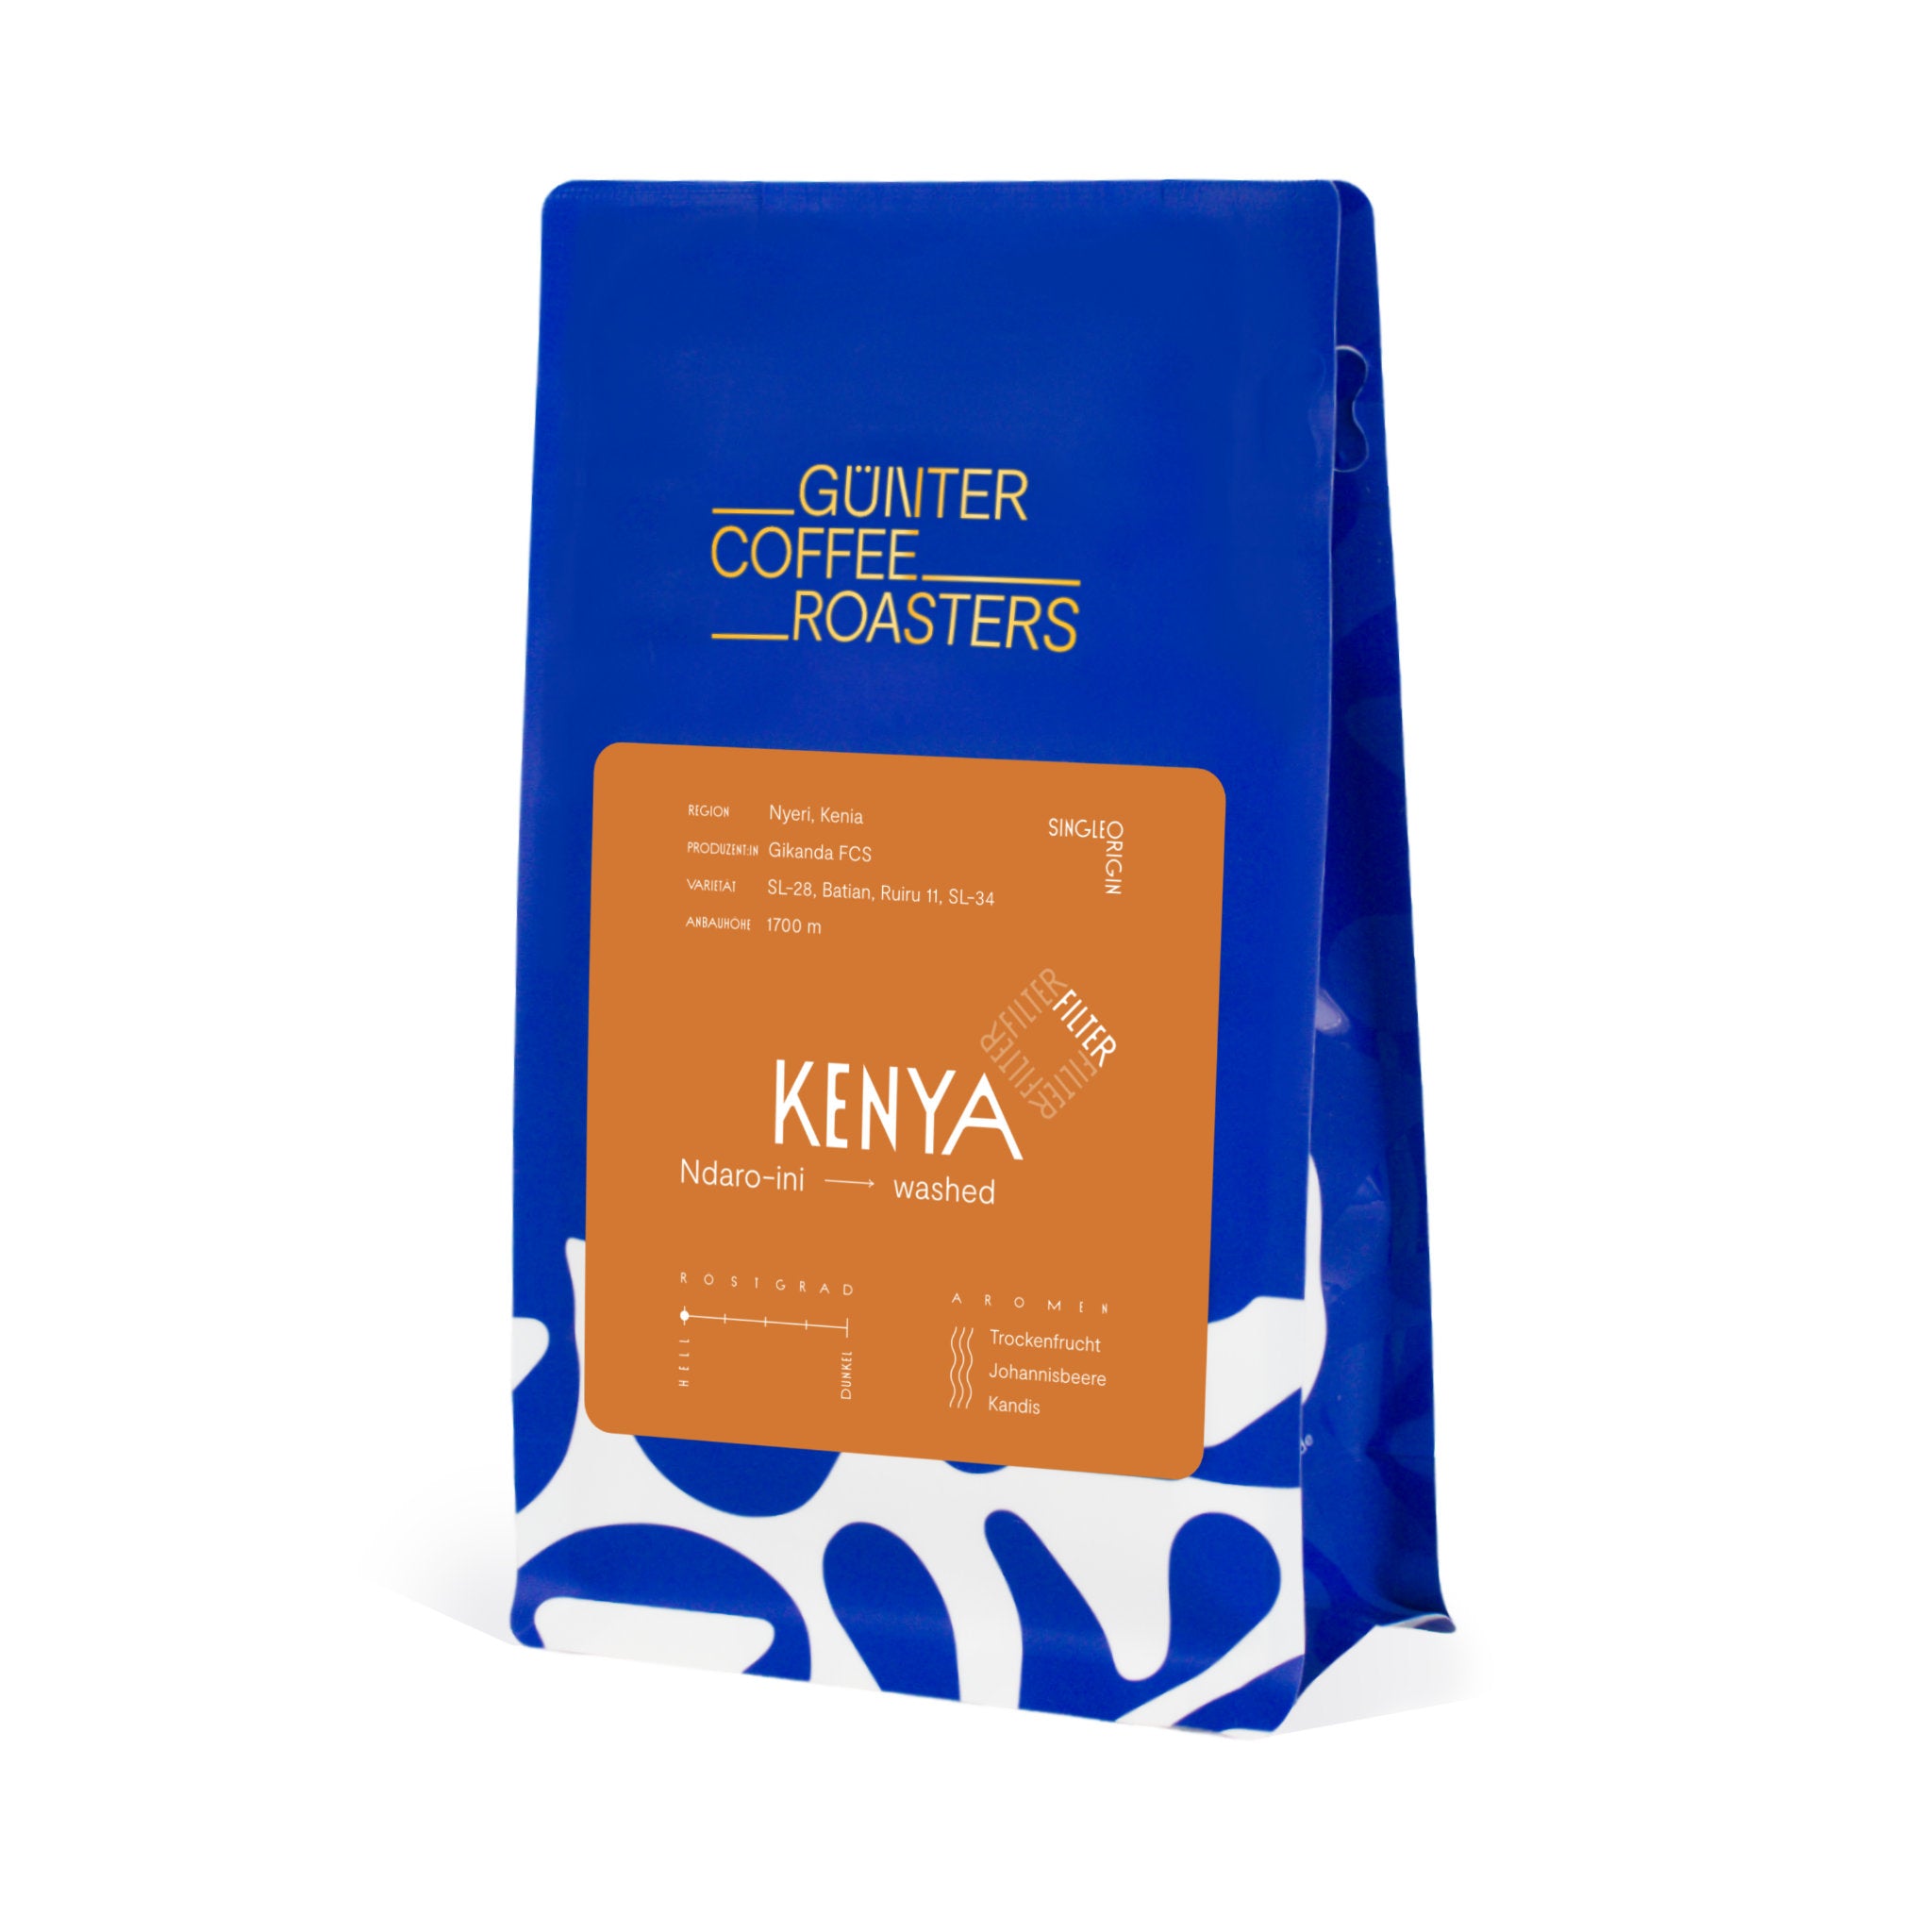 Produktverpackung Kenya Ndaro-ini Kaffeebohnen, washed aufbereitet. Schmeckt nach Trockenfrucht, Johannisbeere und Kandis. Geröstet zur Zubereitung als Filterkaffee.